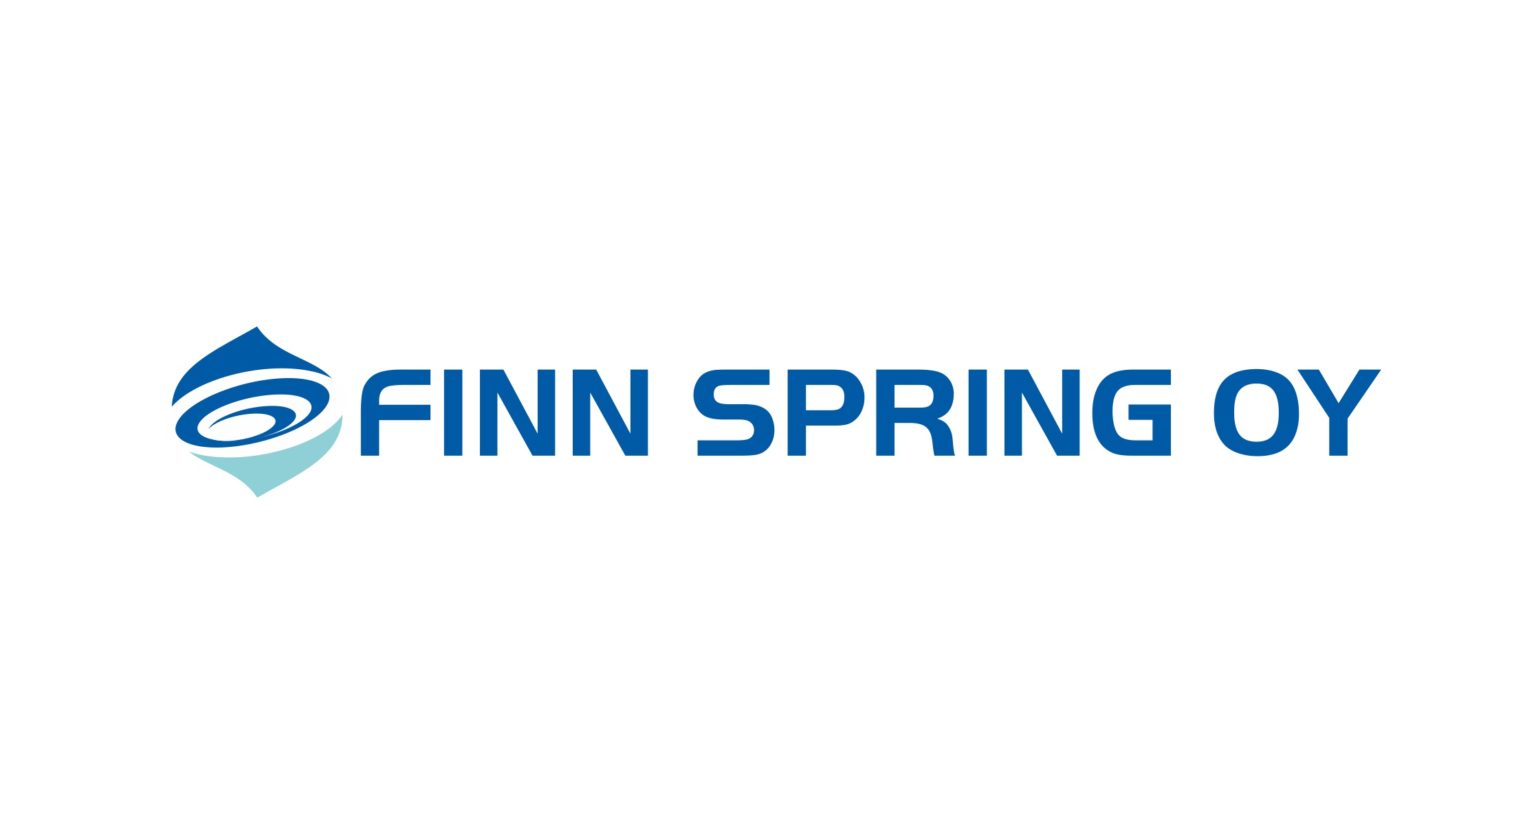 Finn Spring